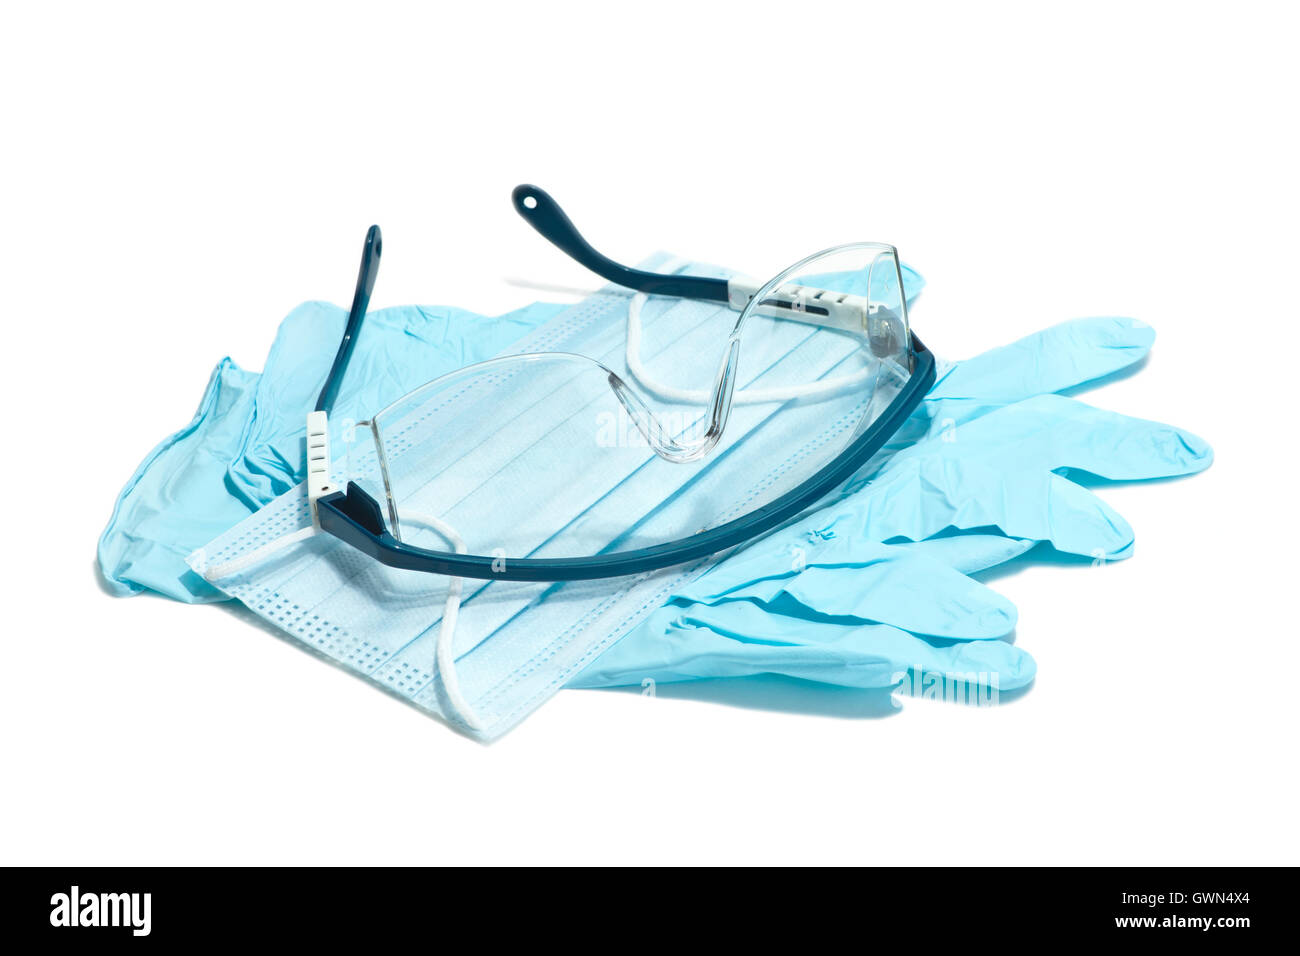 Gants, masque, lunettes de sécurité et pour une utilisation au cours de procédures médicales. Banque D'Images